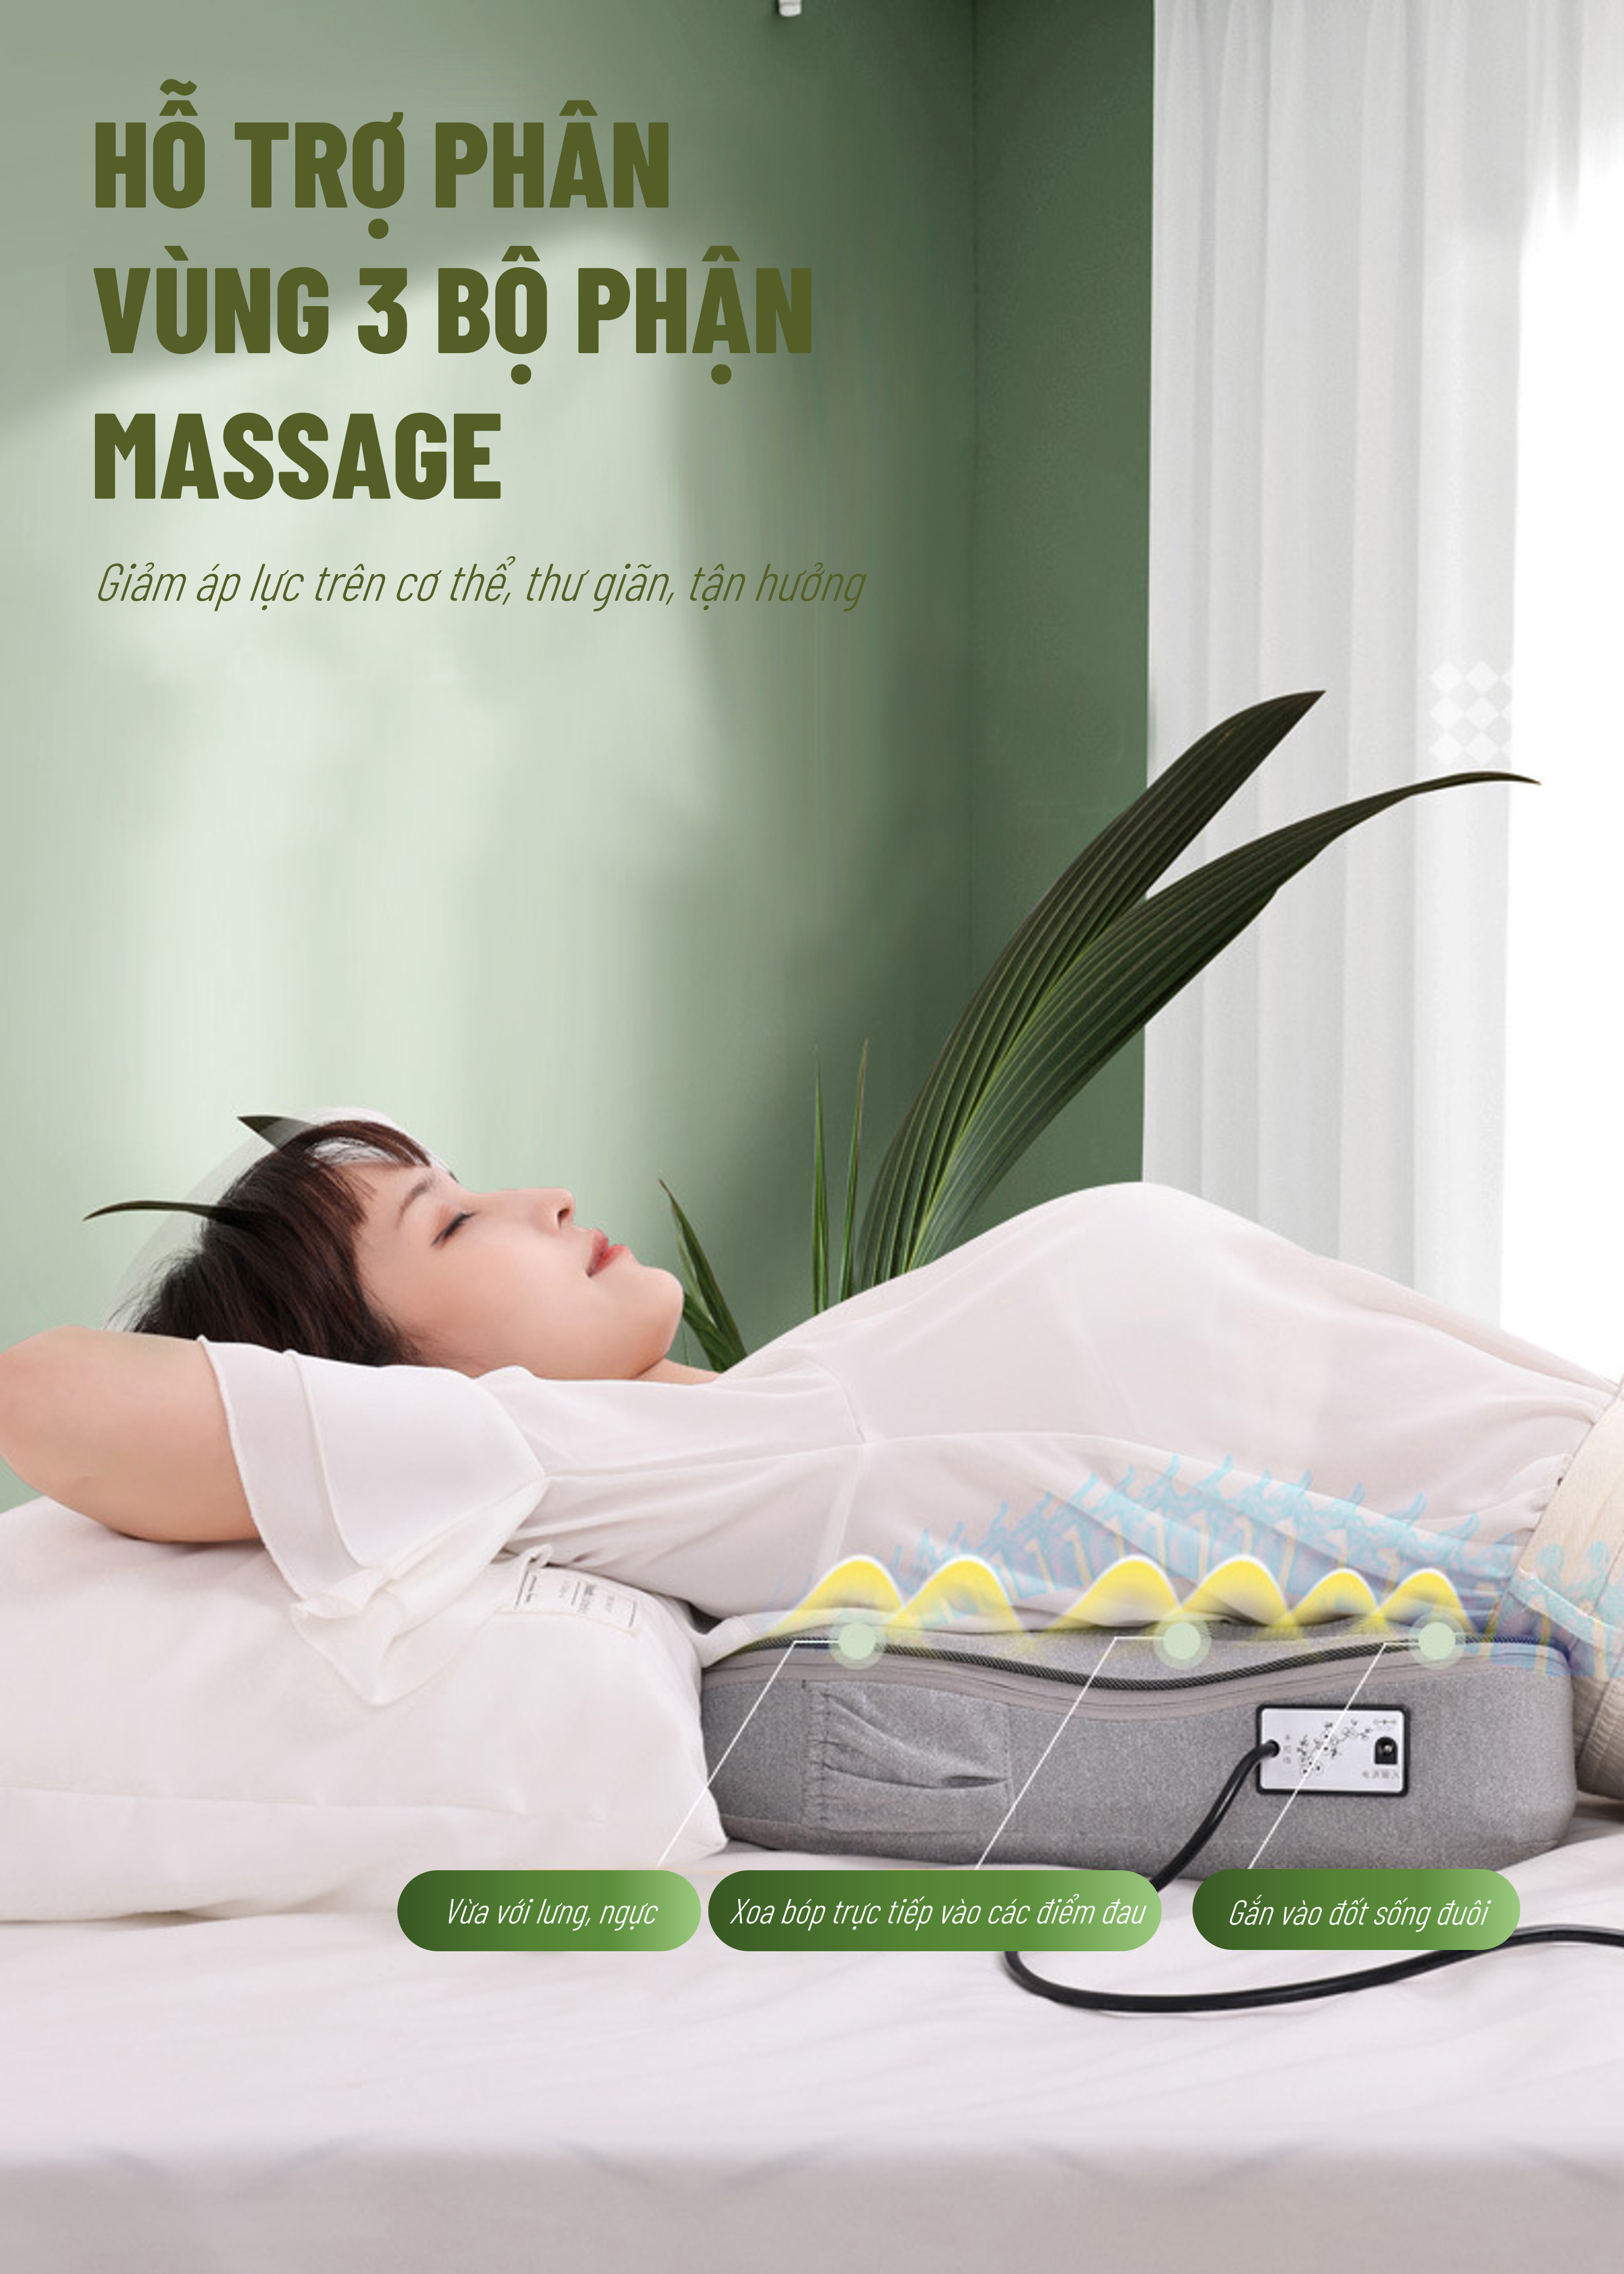 Gối Massage Hồng Ngoại đèn led 7 màu MODEL 2021 - Giúp Mát Xa Vai, Cổ, Gáy, Cột Sống Lưng Đa Năng Kết Hợp Với Chế Độ Rung Và Nhiệt - Chất Liệu vải nỉ cao cấp